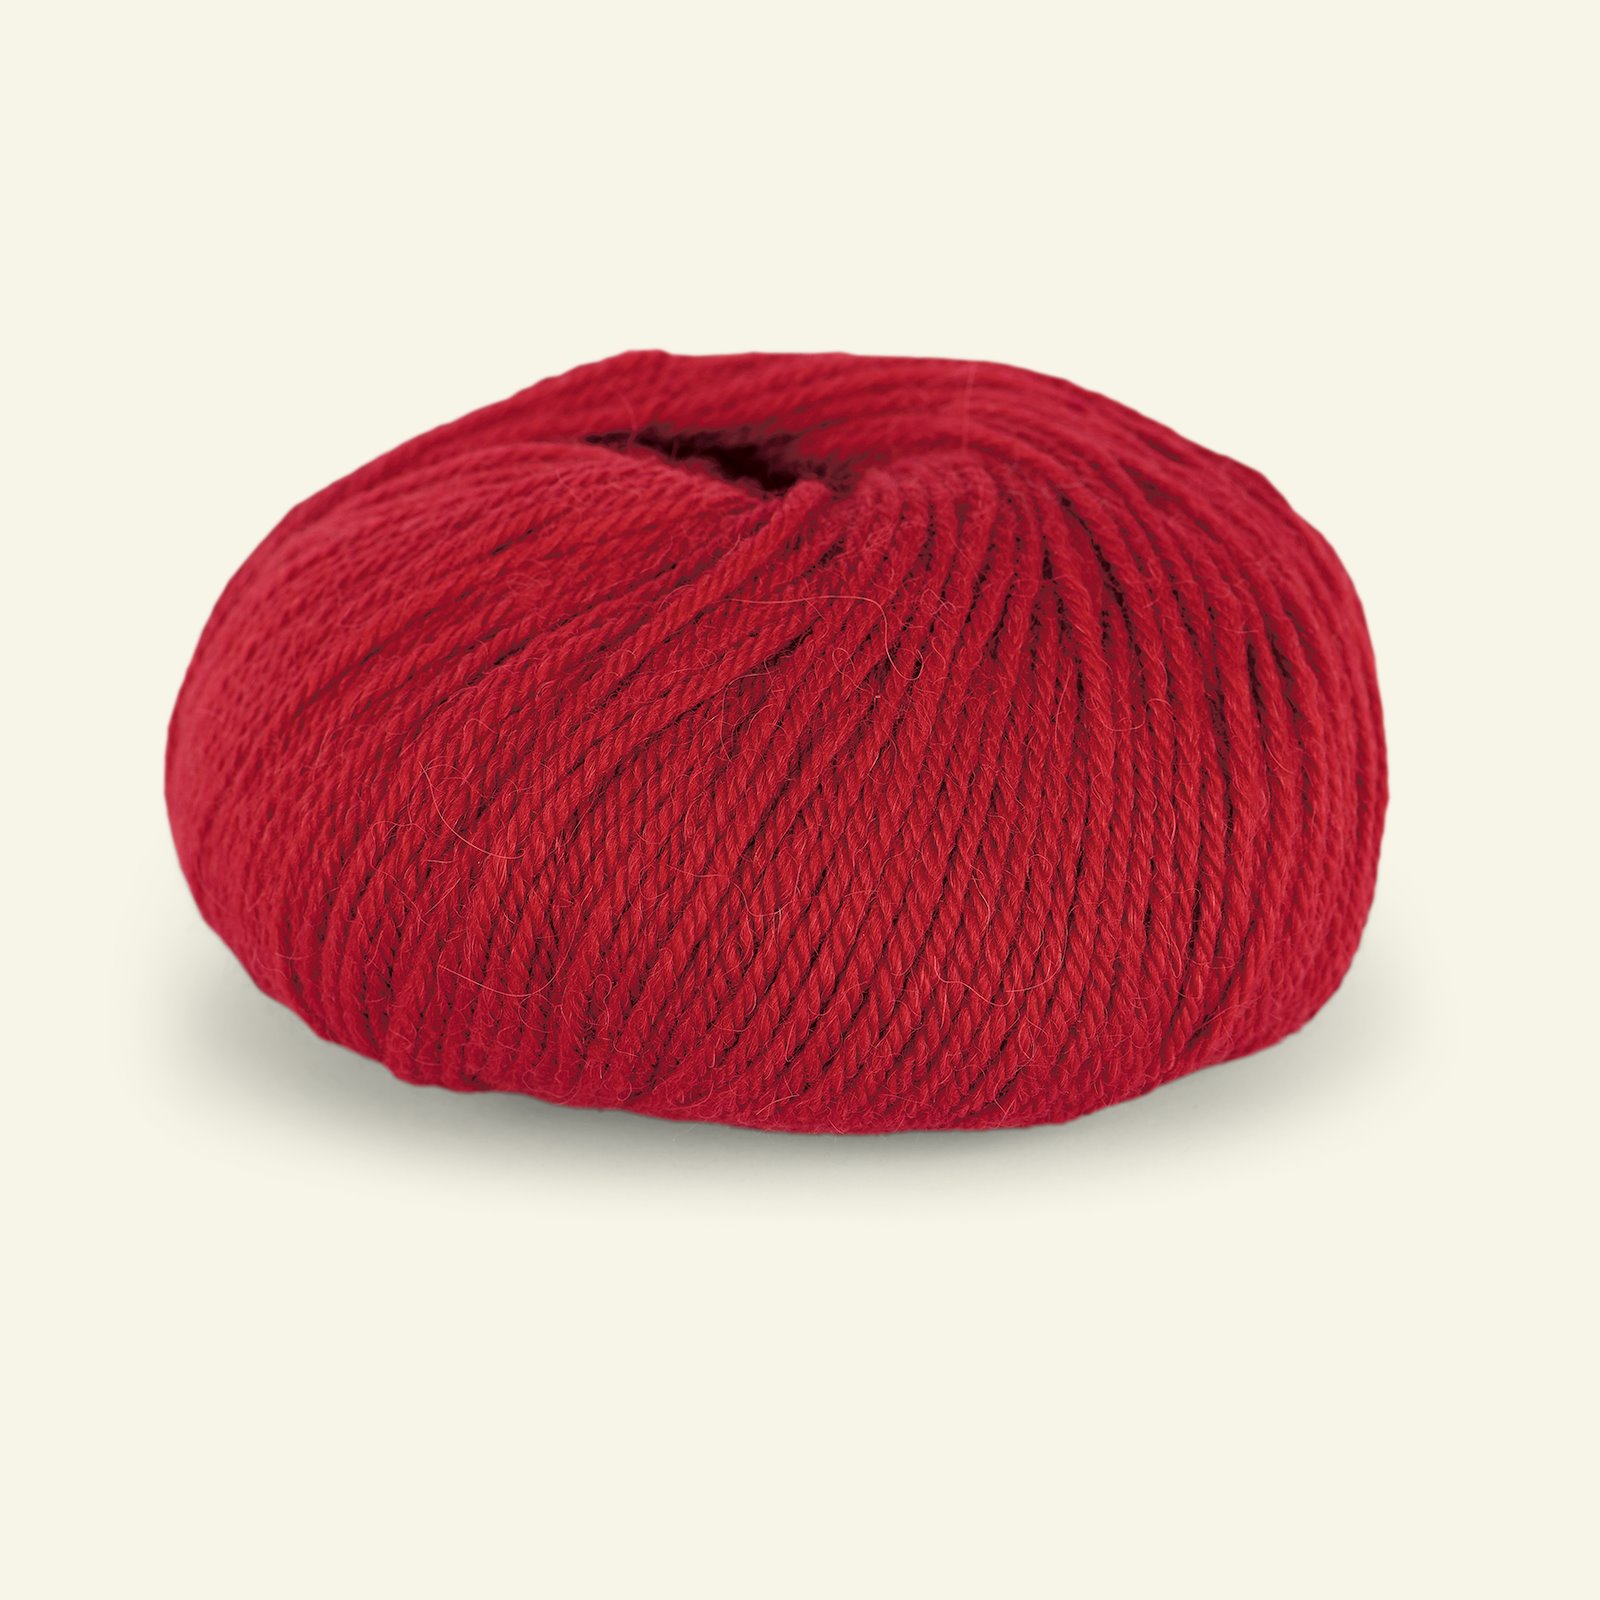 Du Store Alpakka, alpaca merino mixed yarn "Sterk", red (828) 90000668_pack_b